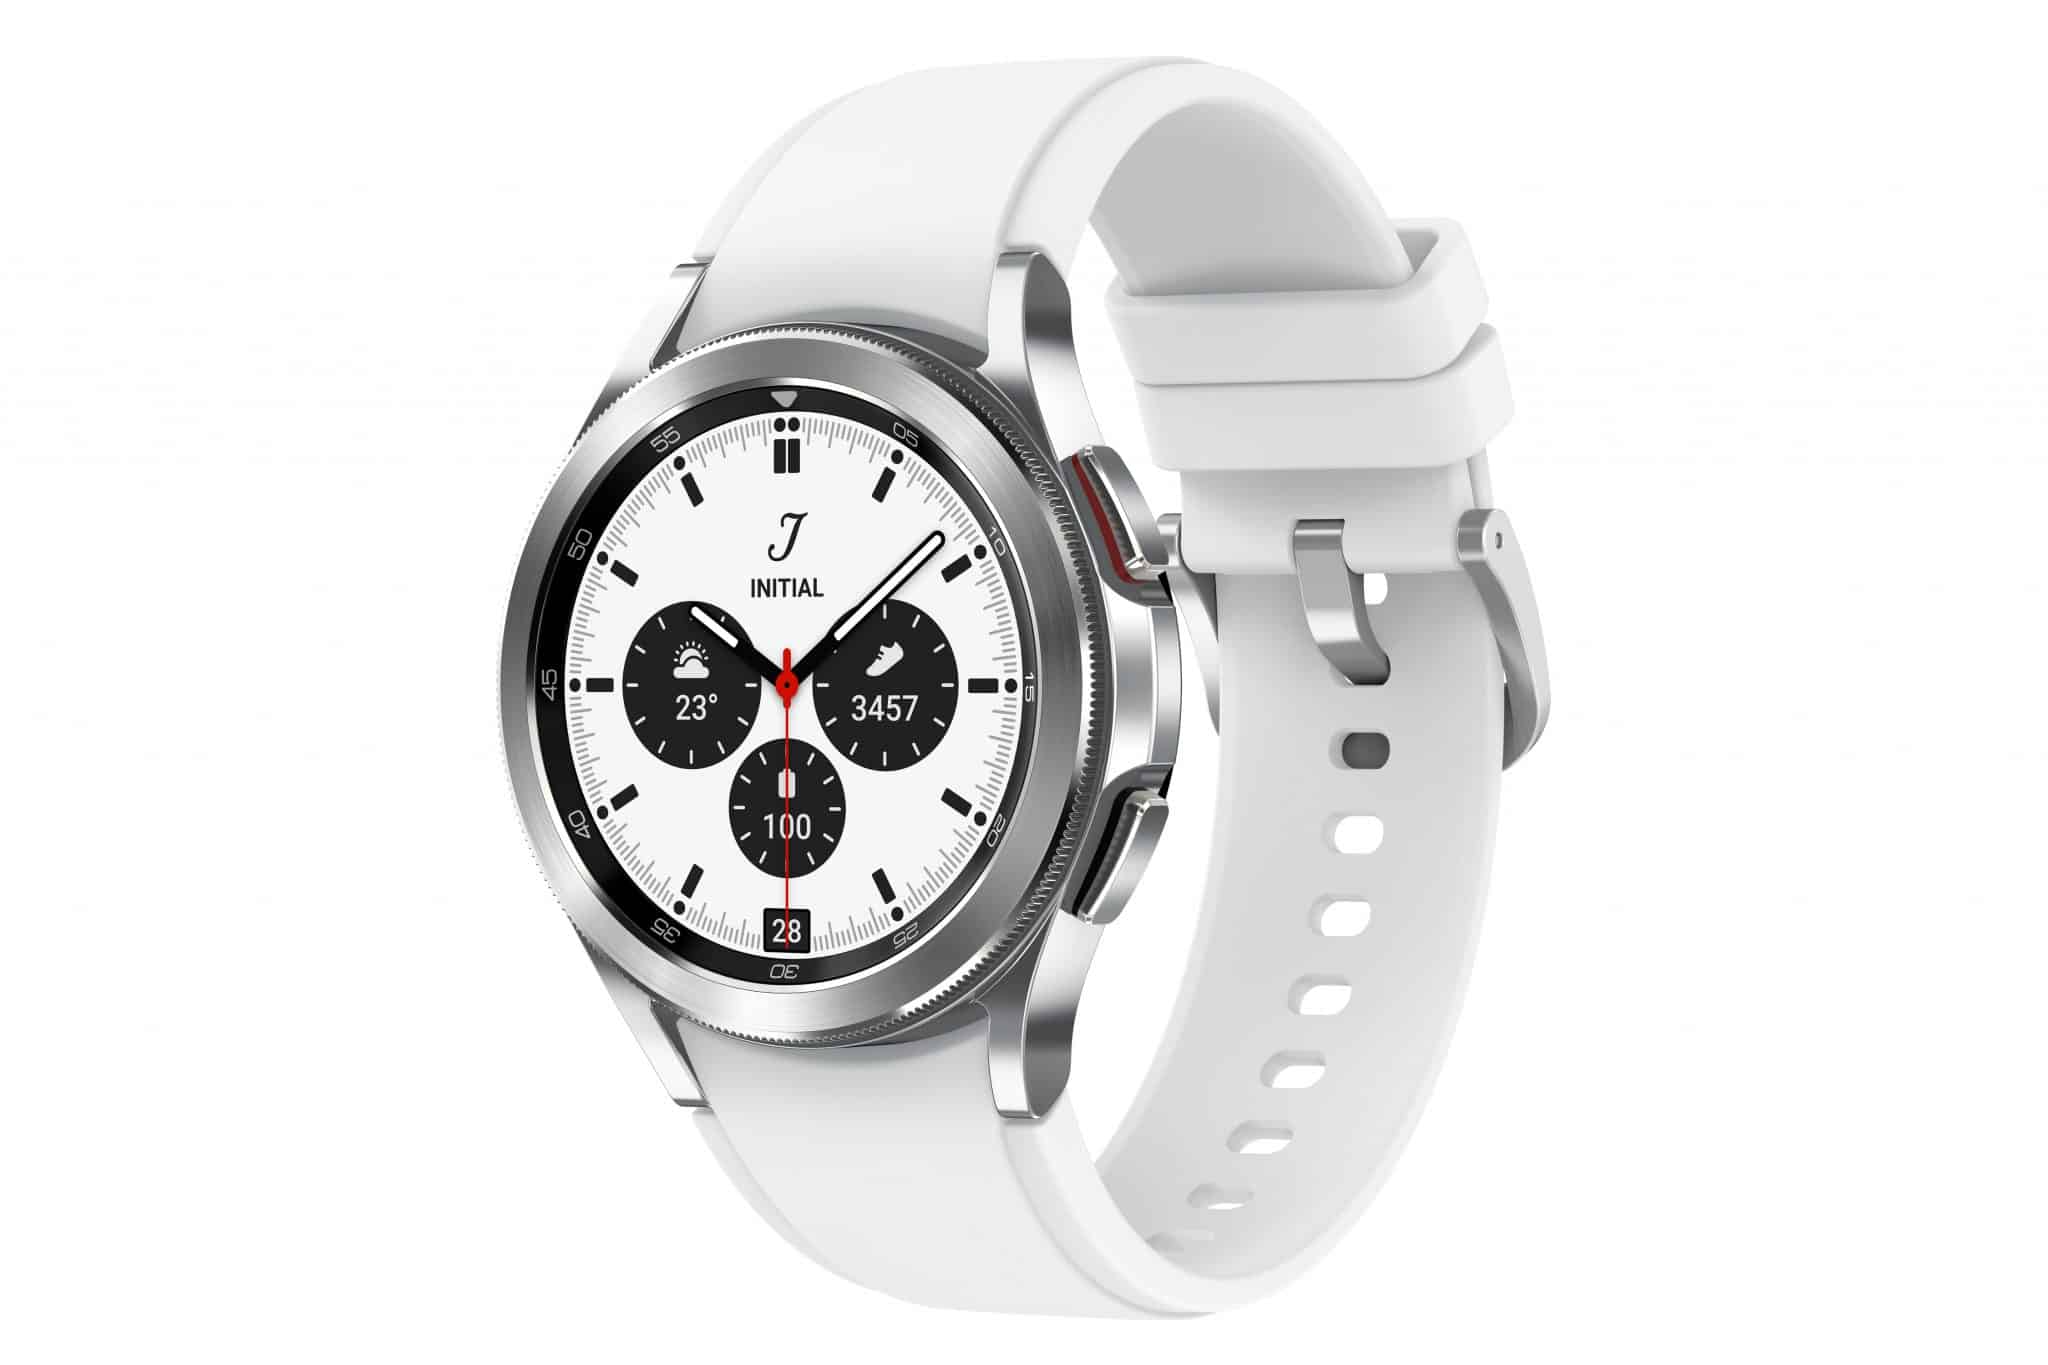 Testes e experiências do Samsung Galaxy Watch 4 Classic – gadget de saúde por excelência?